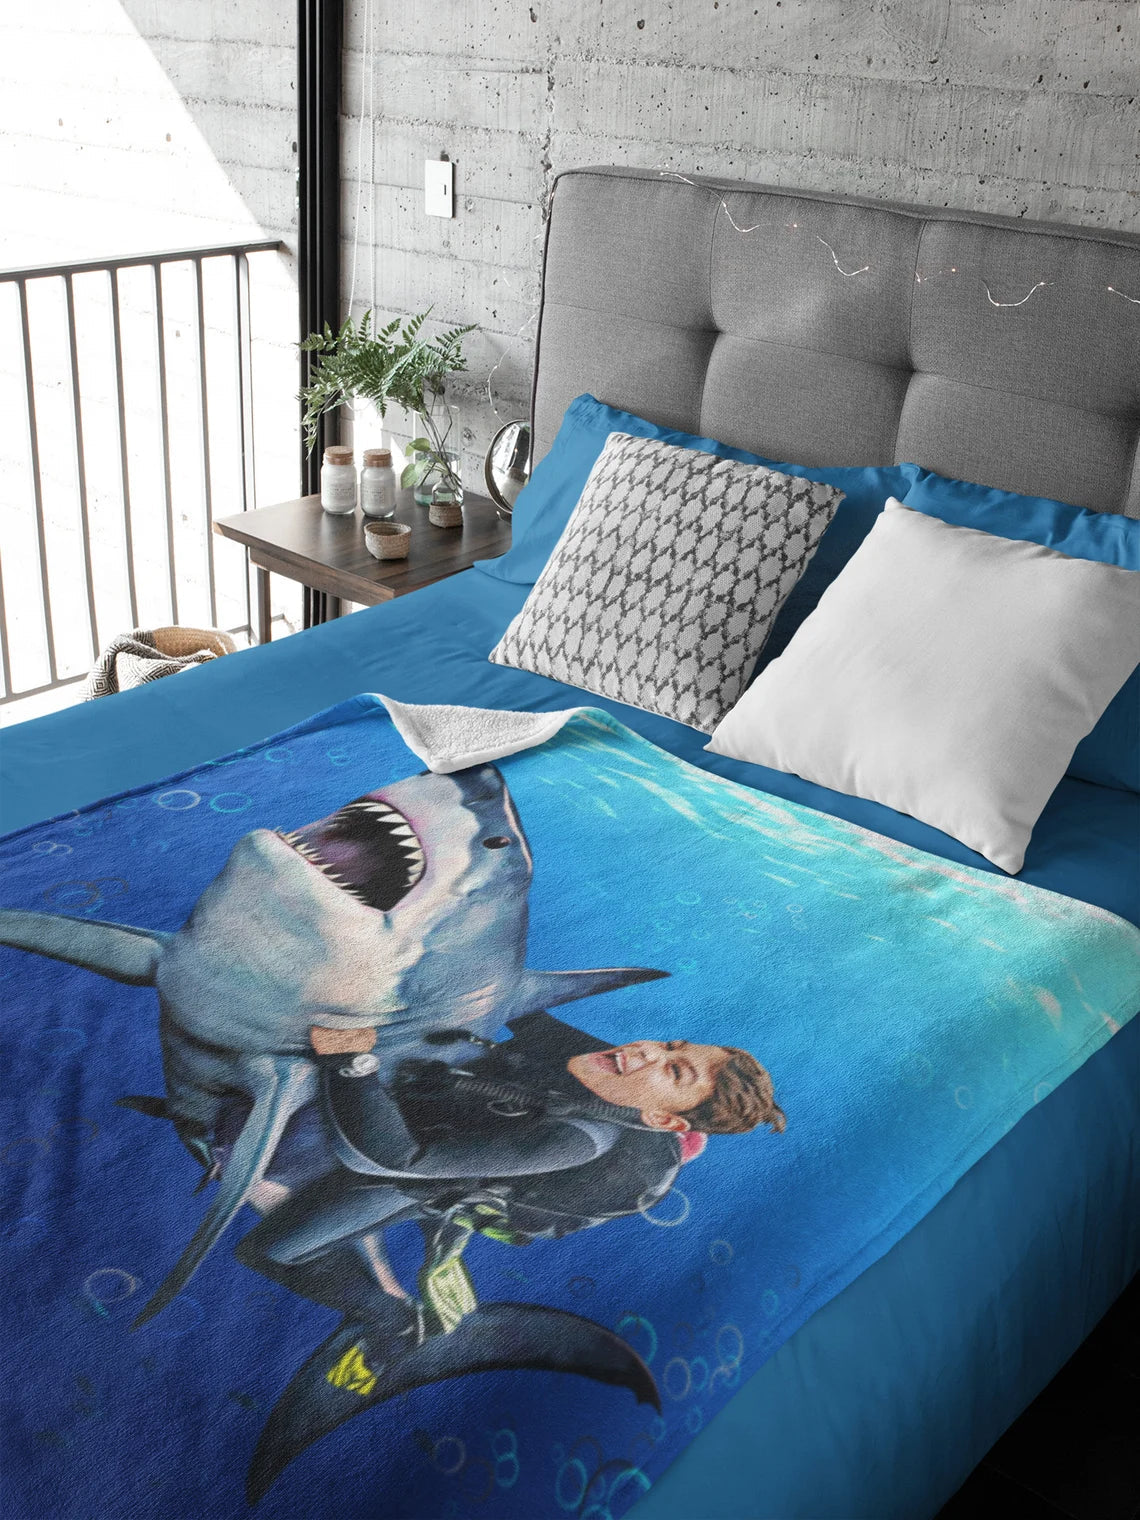 The Shark Rider Blanket Custom Gift For Kids at My Kid's Dream mykidsdream.com